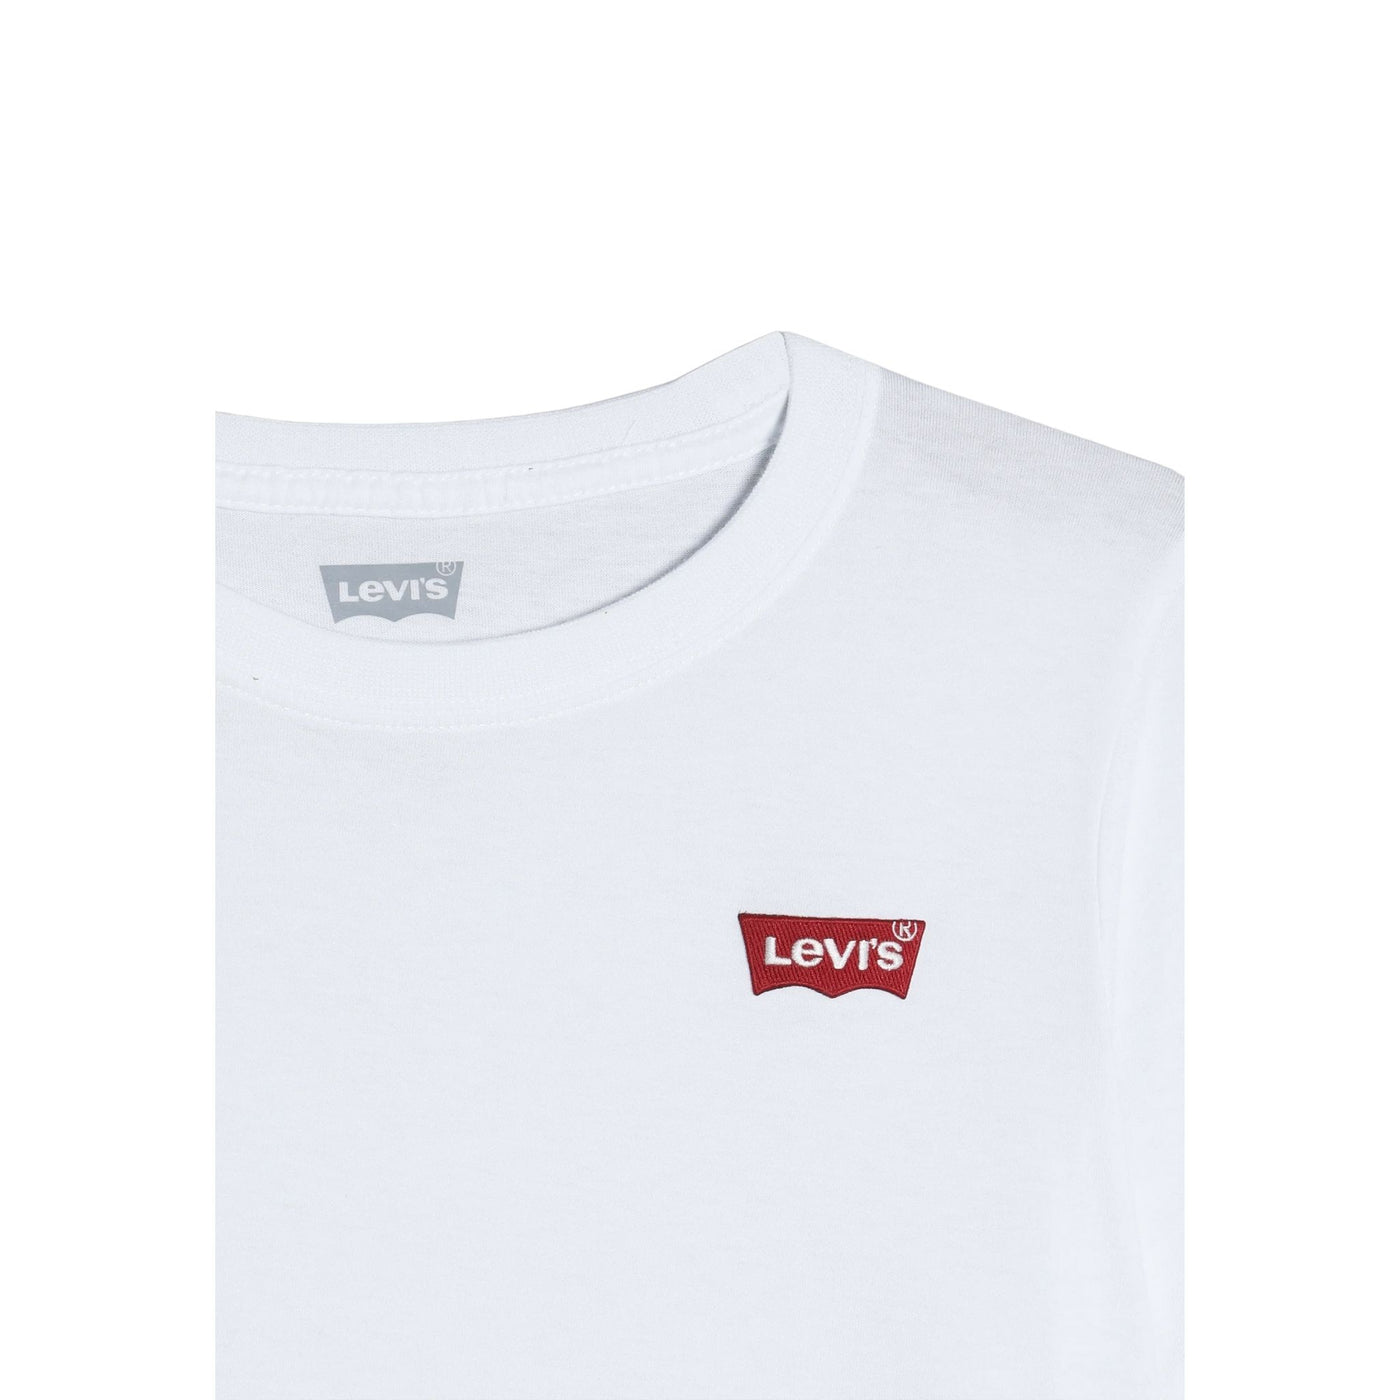 T-shirt bambino bianca firmata Levi's dettaglio logo sul petto